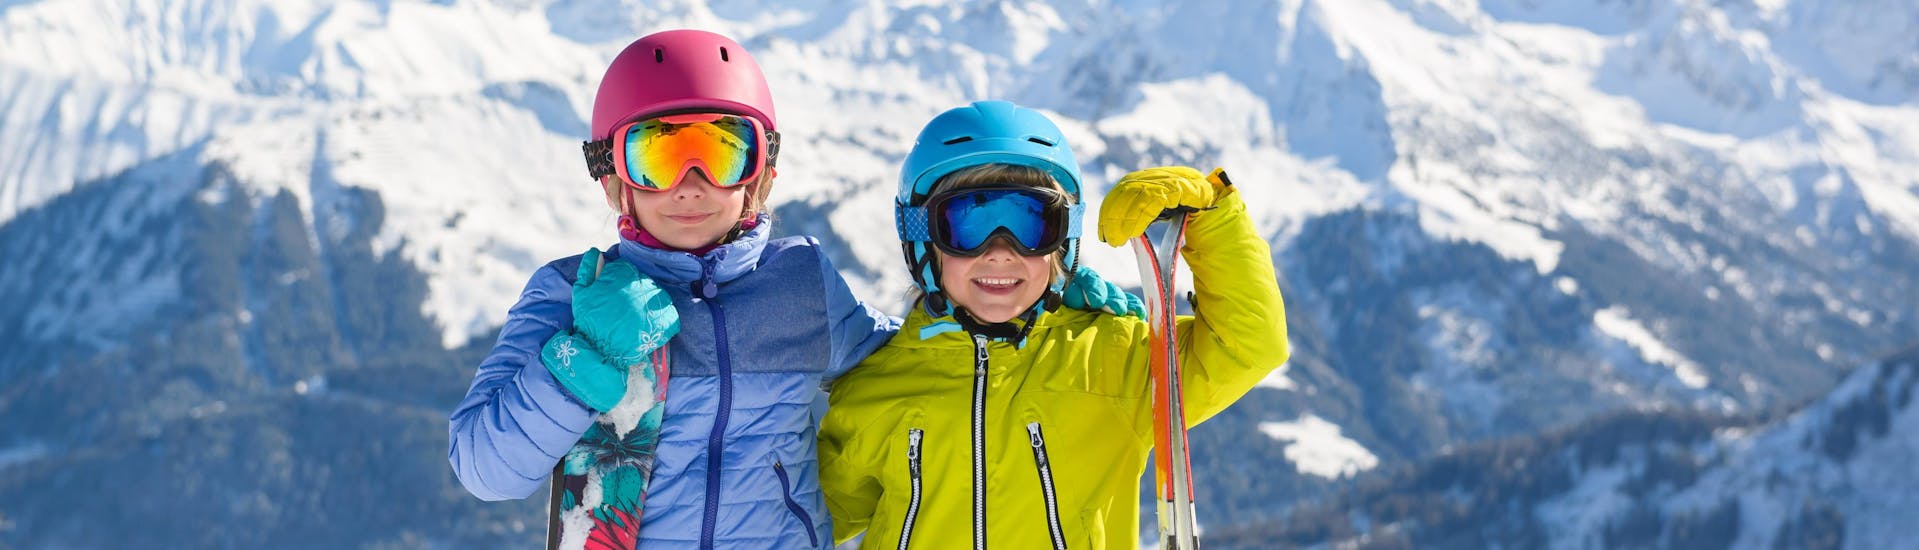 Deux enfants en tenue de ski se préparent pour le cours de ski pour enfants au sommet de la montagne et sourient pour la photo.